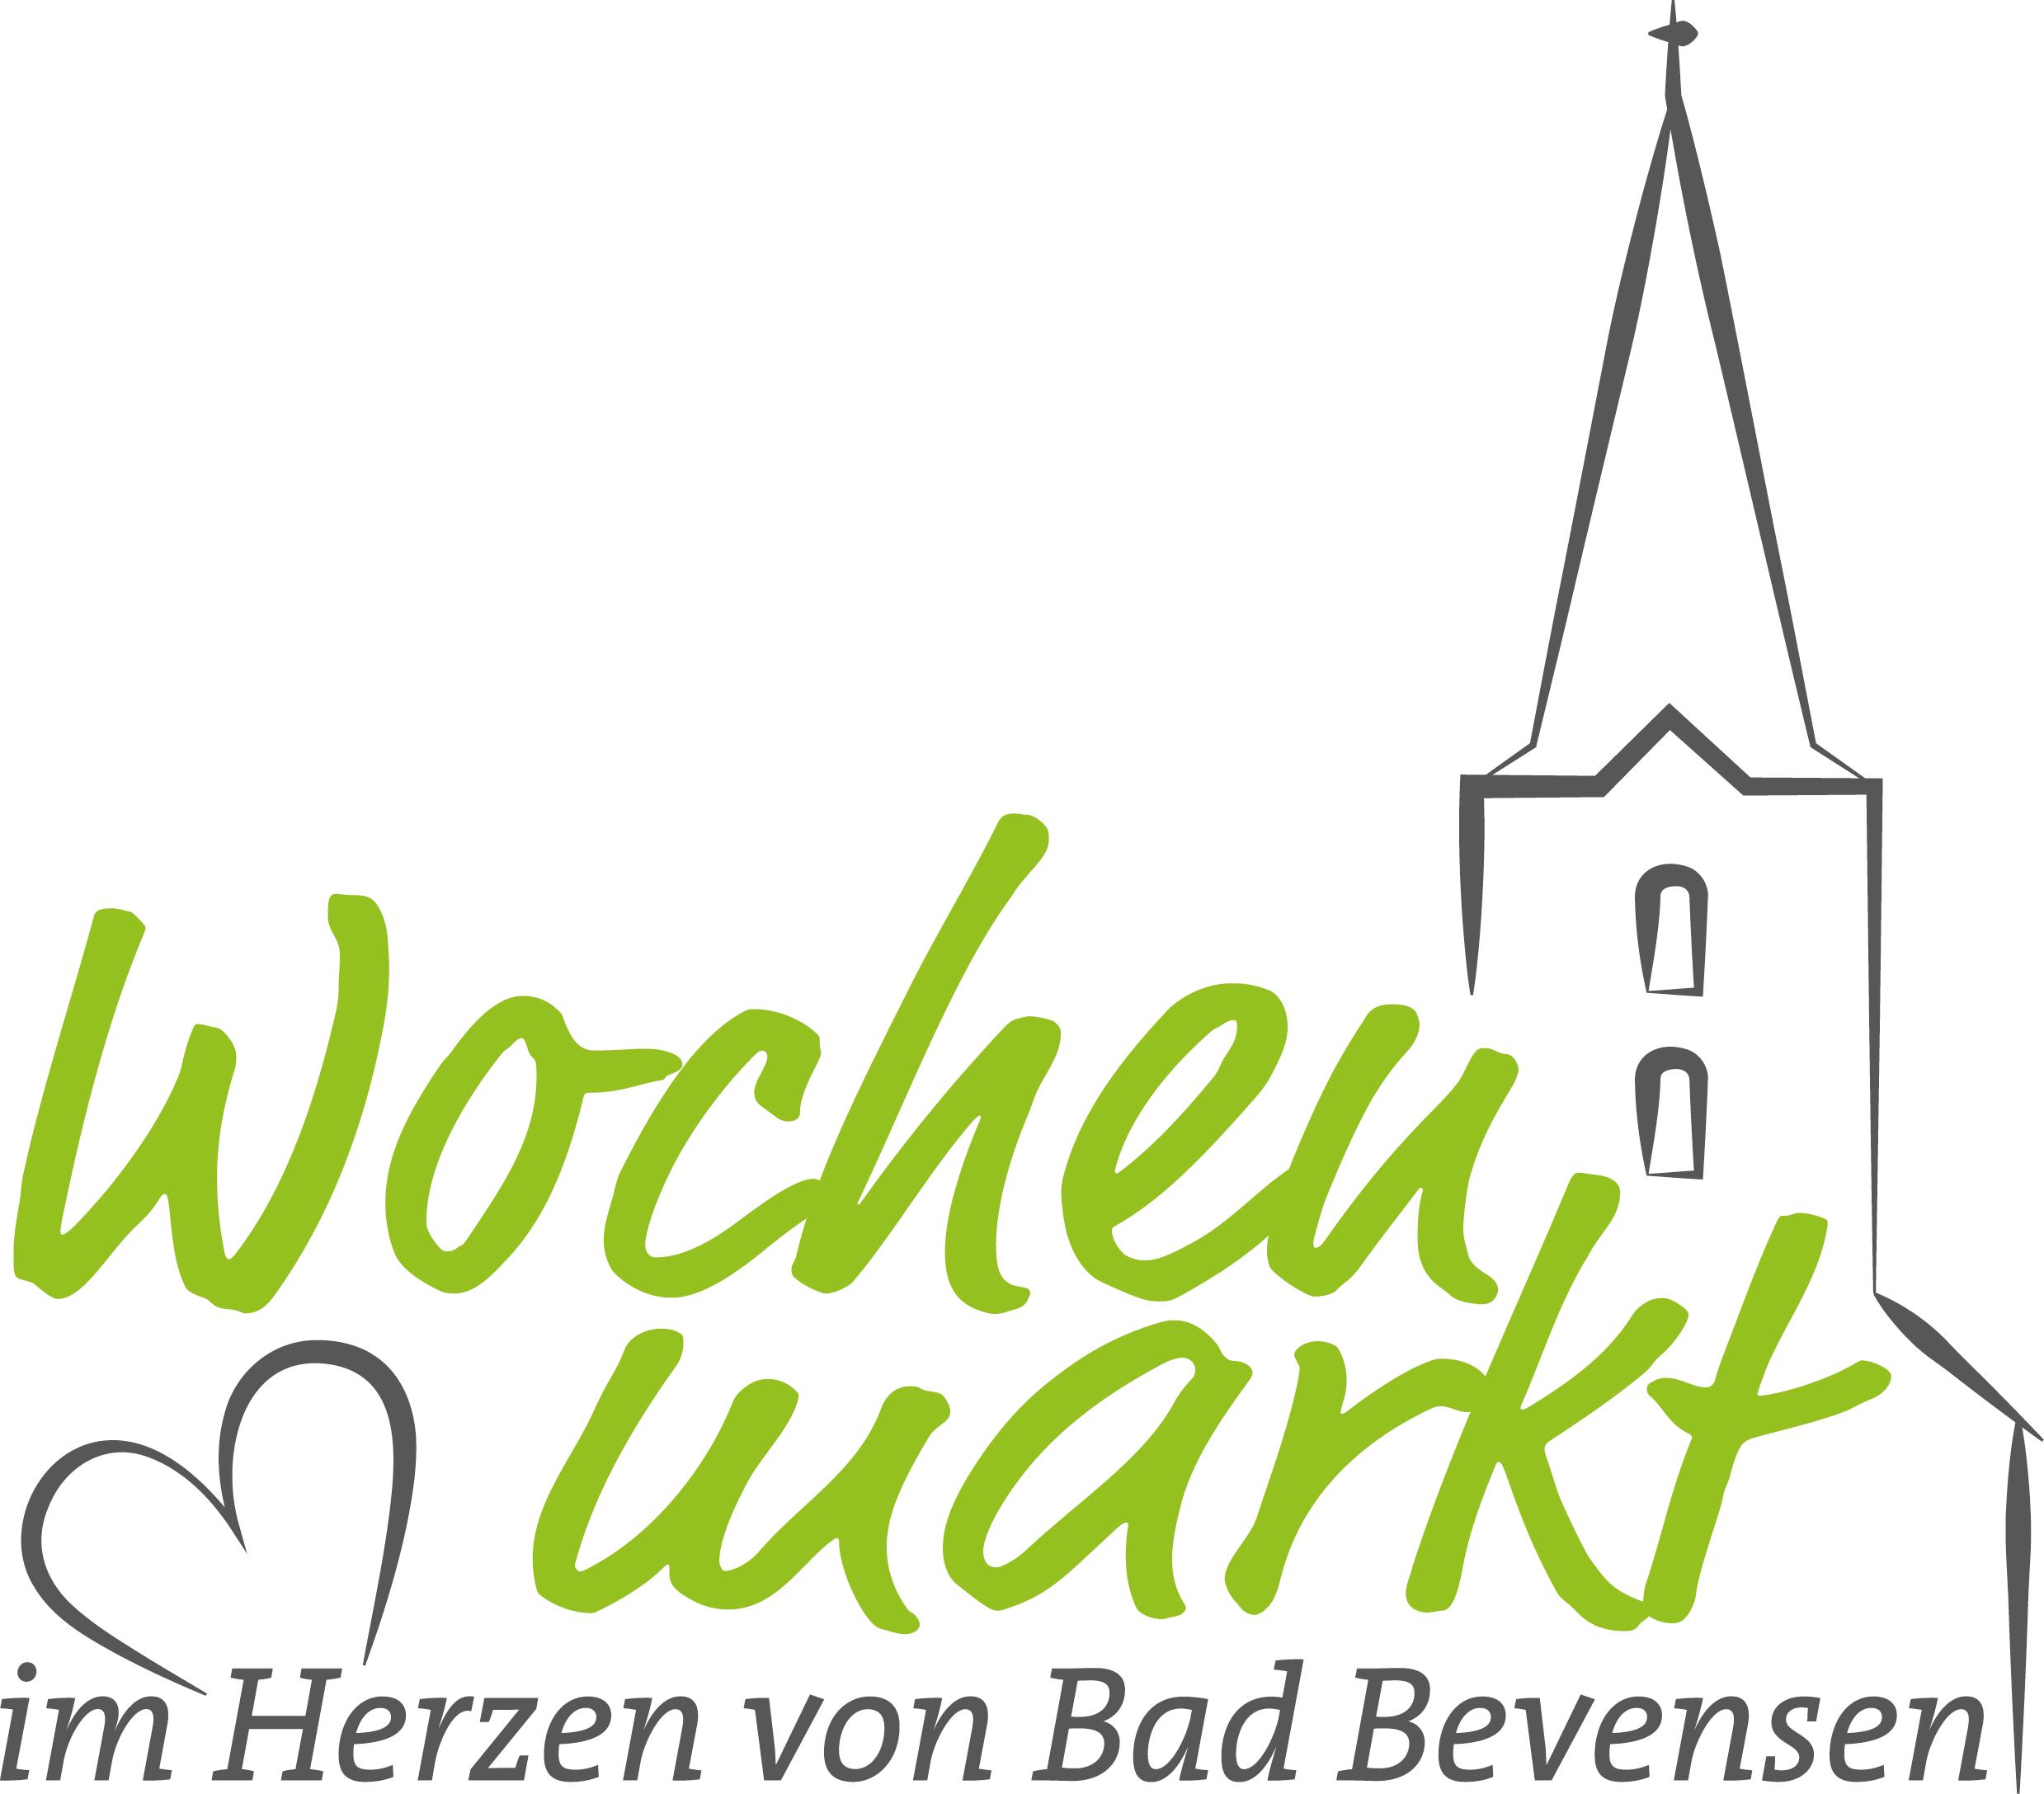 logo_wochenmarkt_im-herzen-von-bad-bevensen